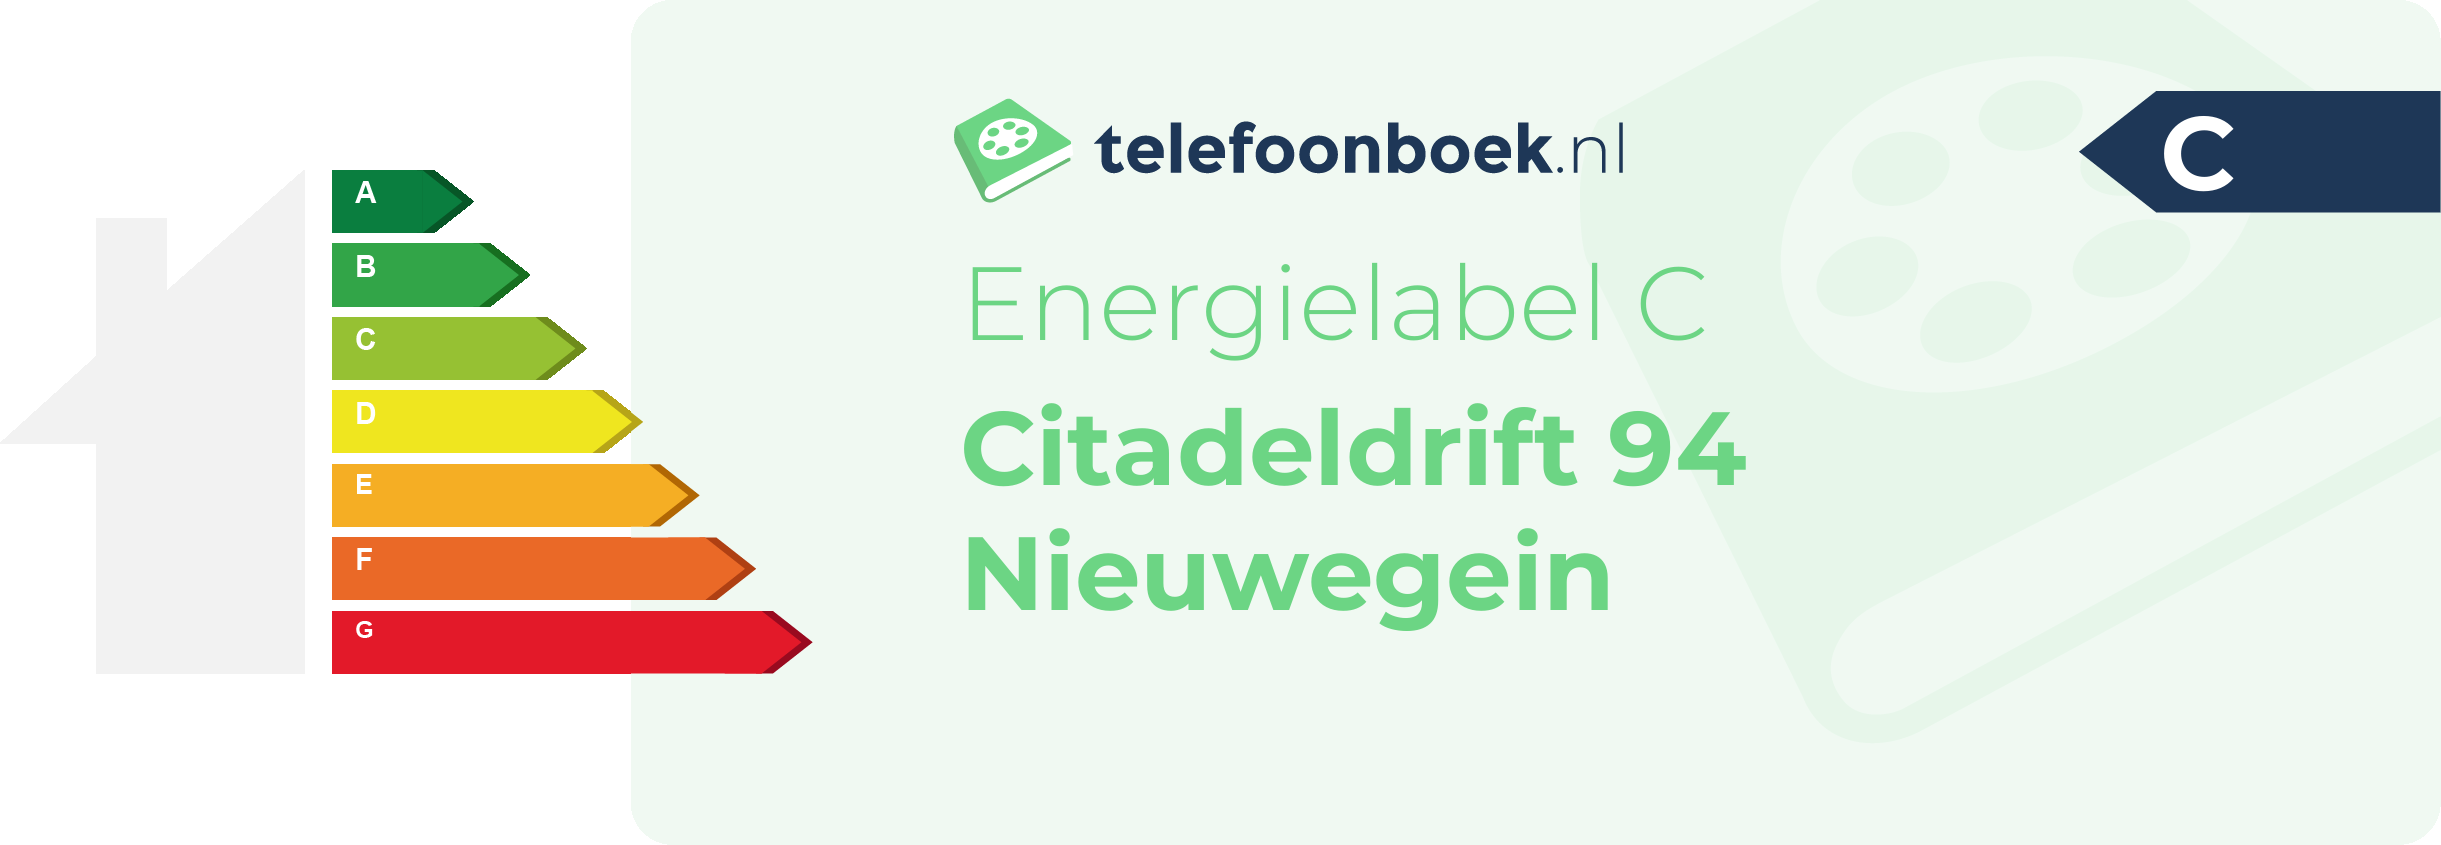 Energielabel Citadeldrift 94 Nieuwegein